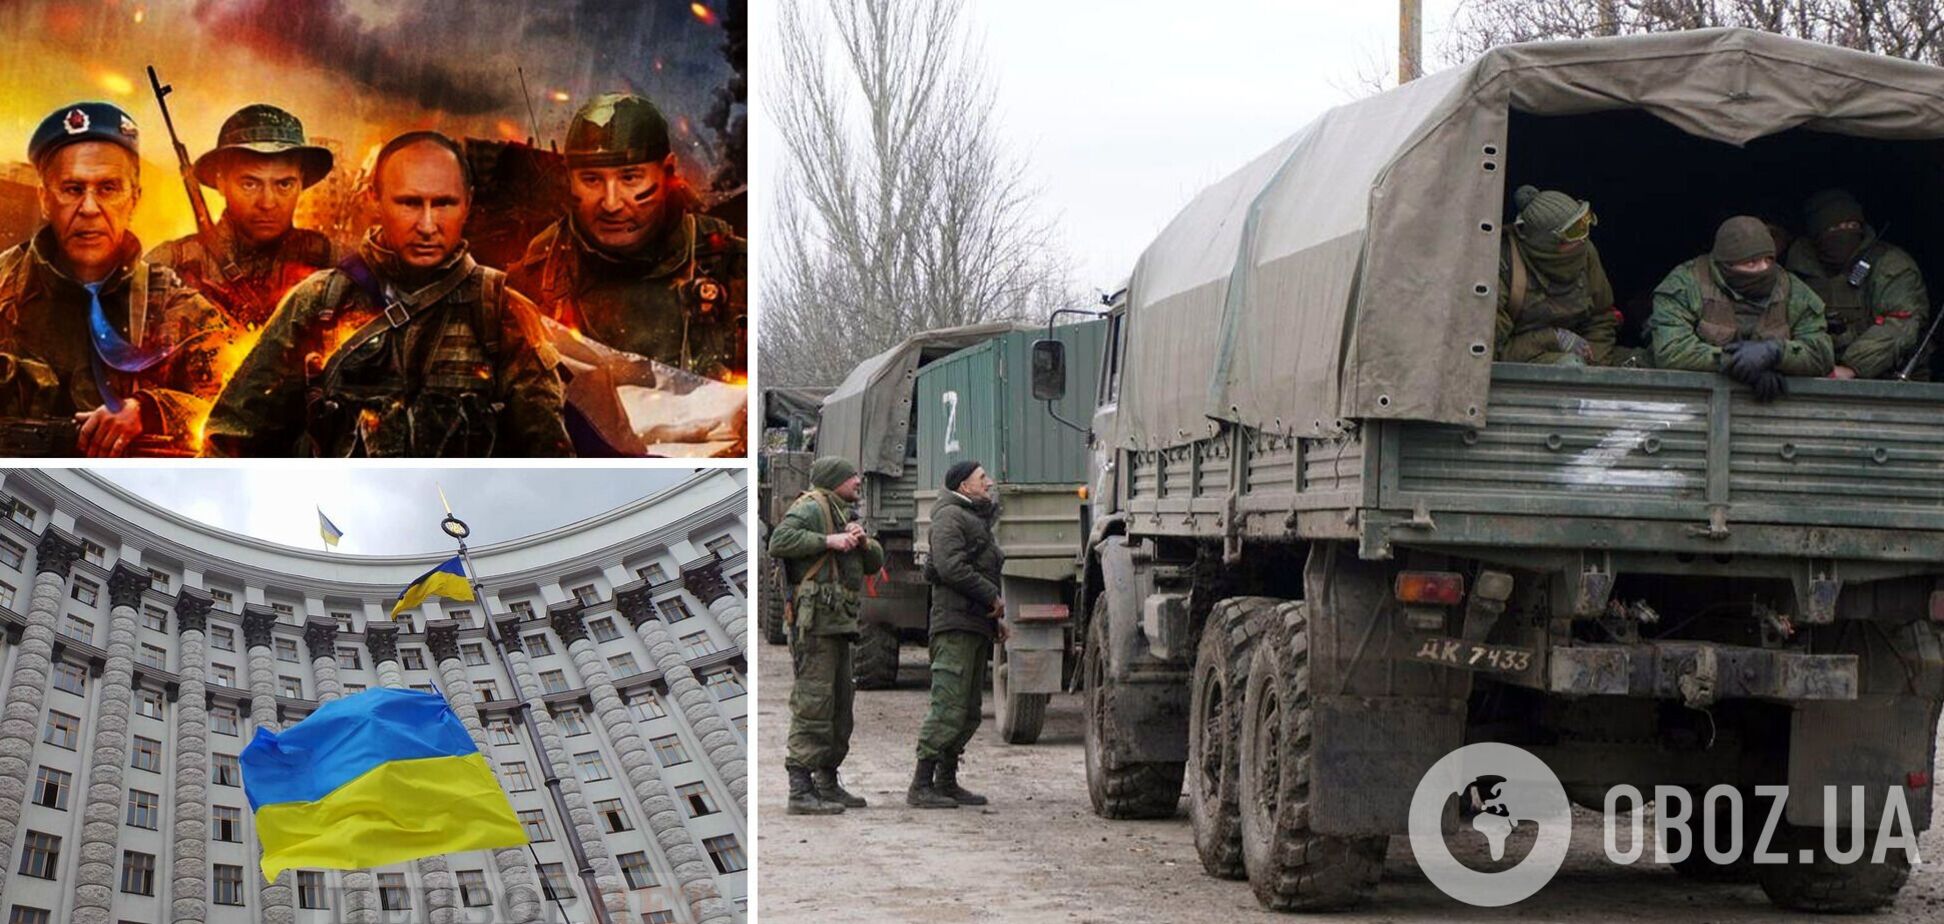 РФ перекидає в Україну терористичні групи з метою ліквідації керівництва країни – розвідка